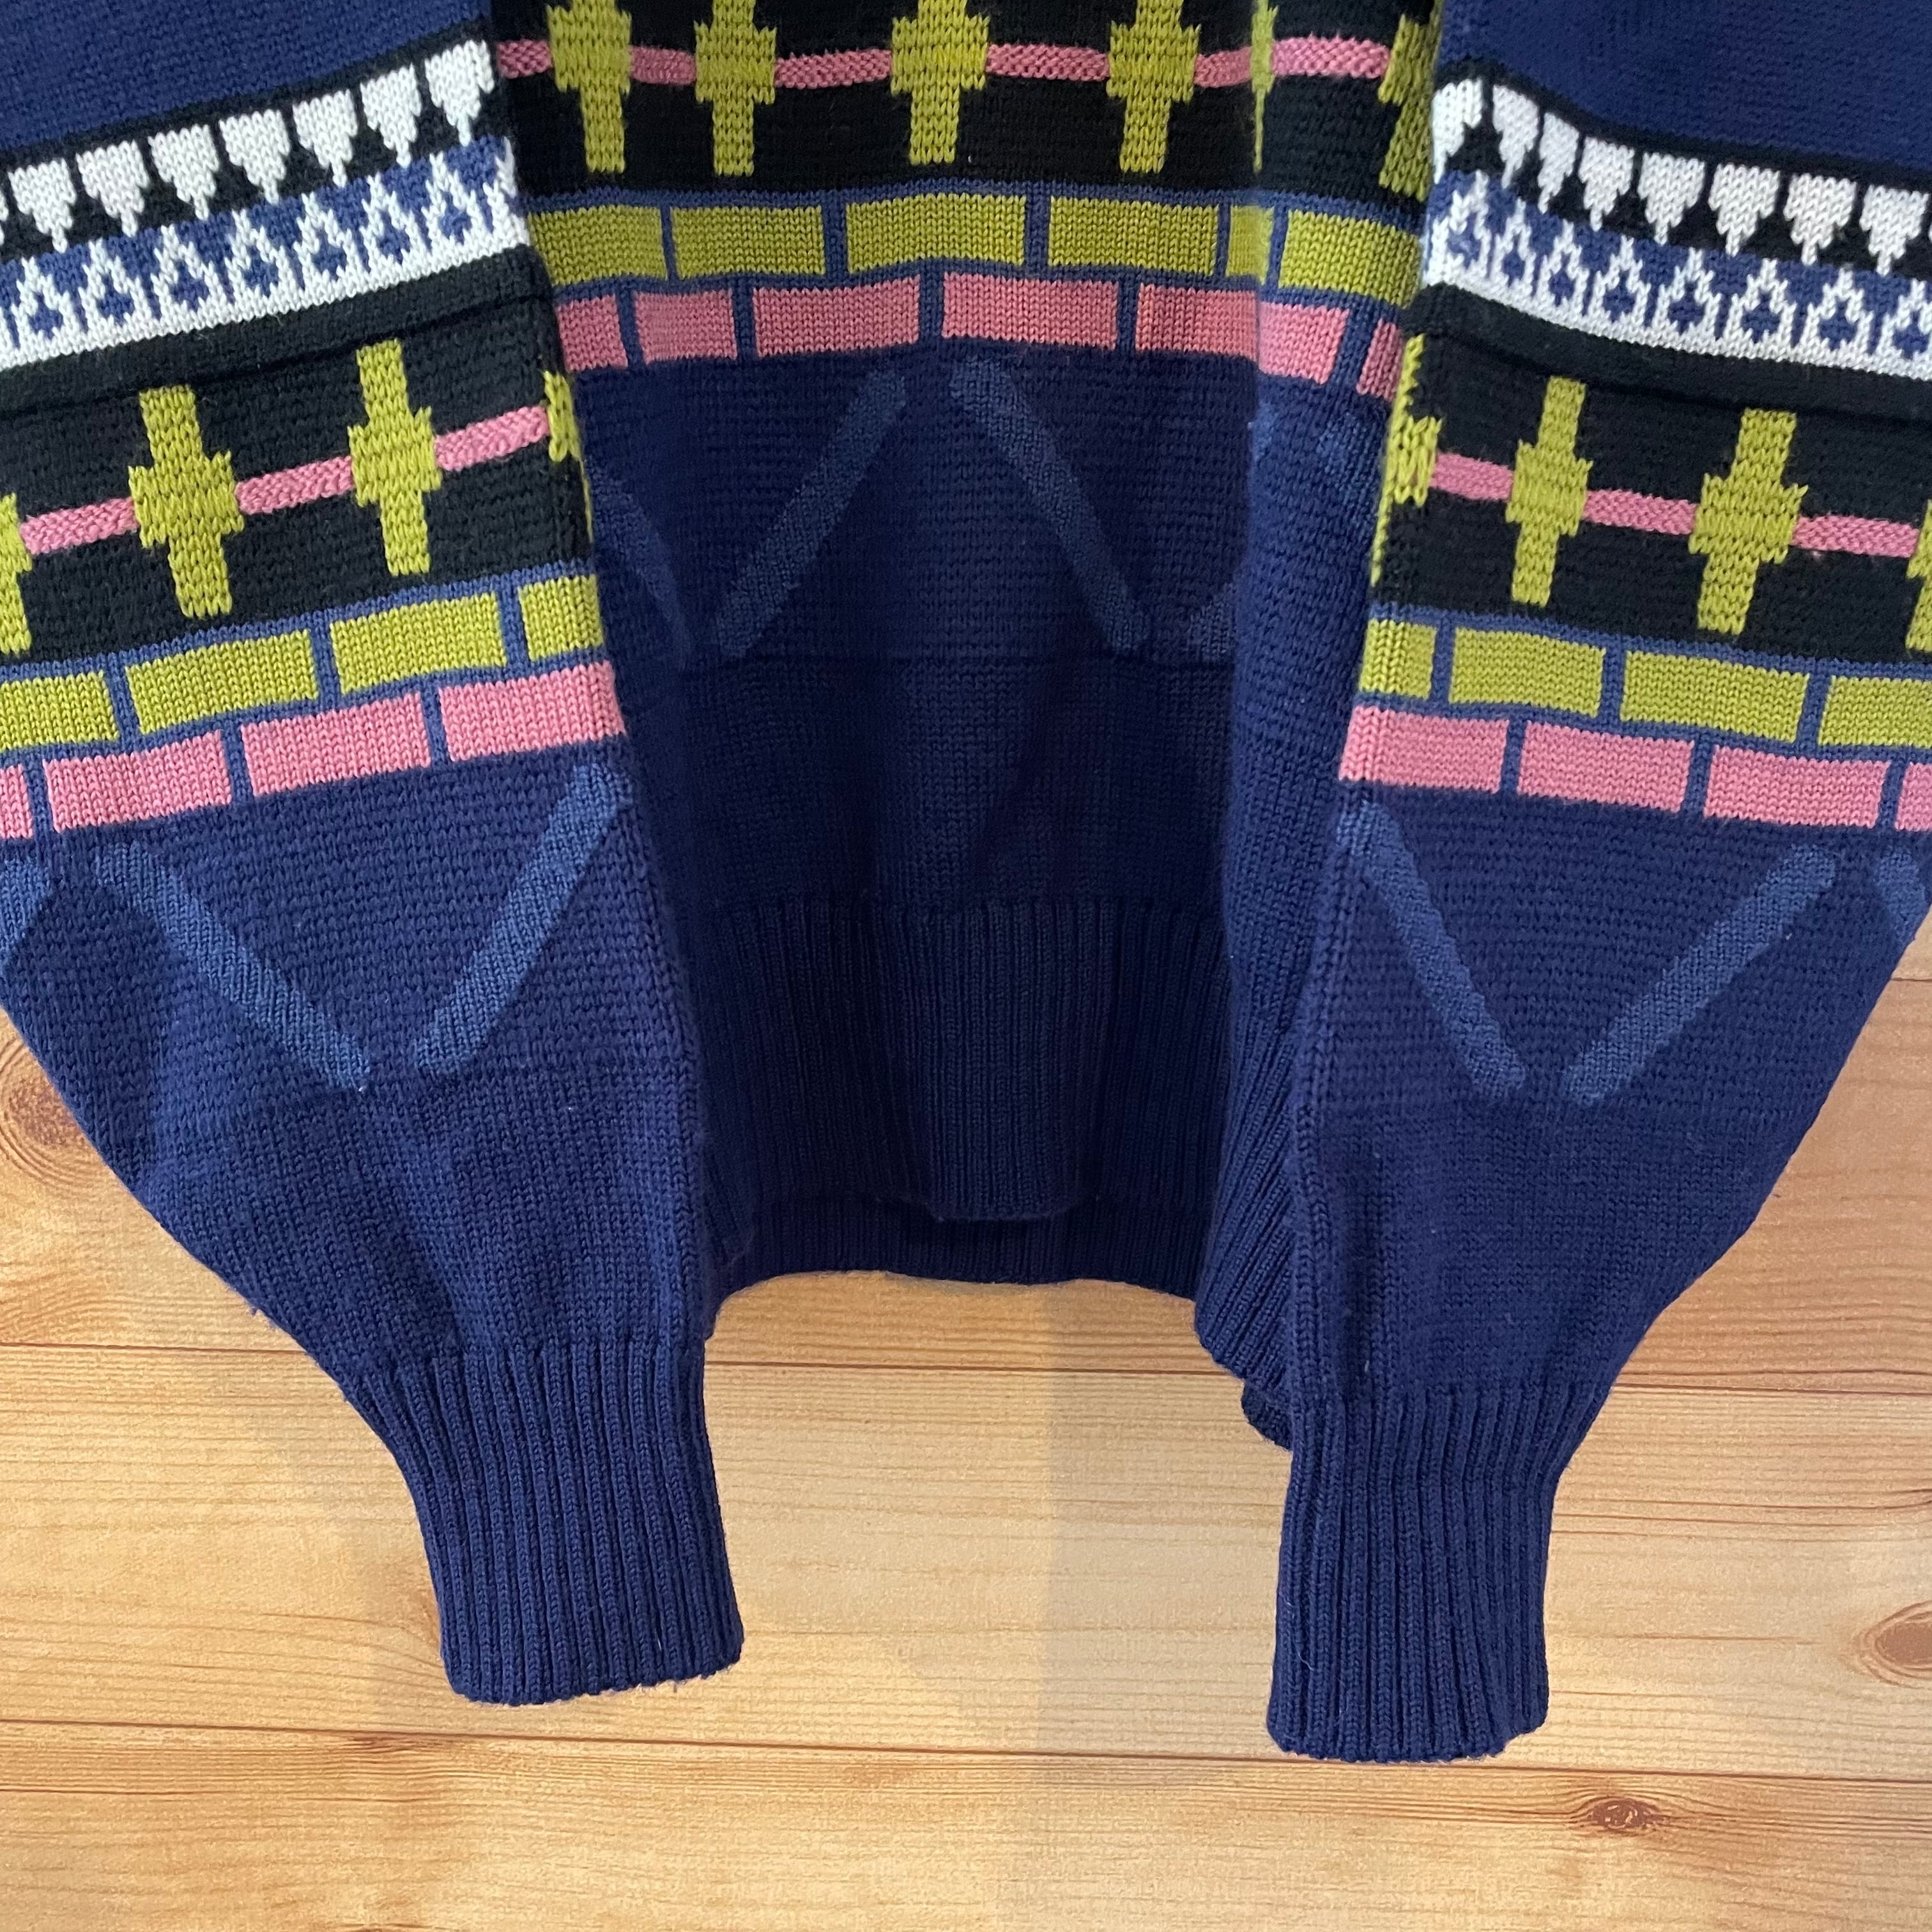 Munsingwear 1886】日本製 柄ニット 3Dニット デザインニット セーター